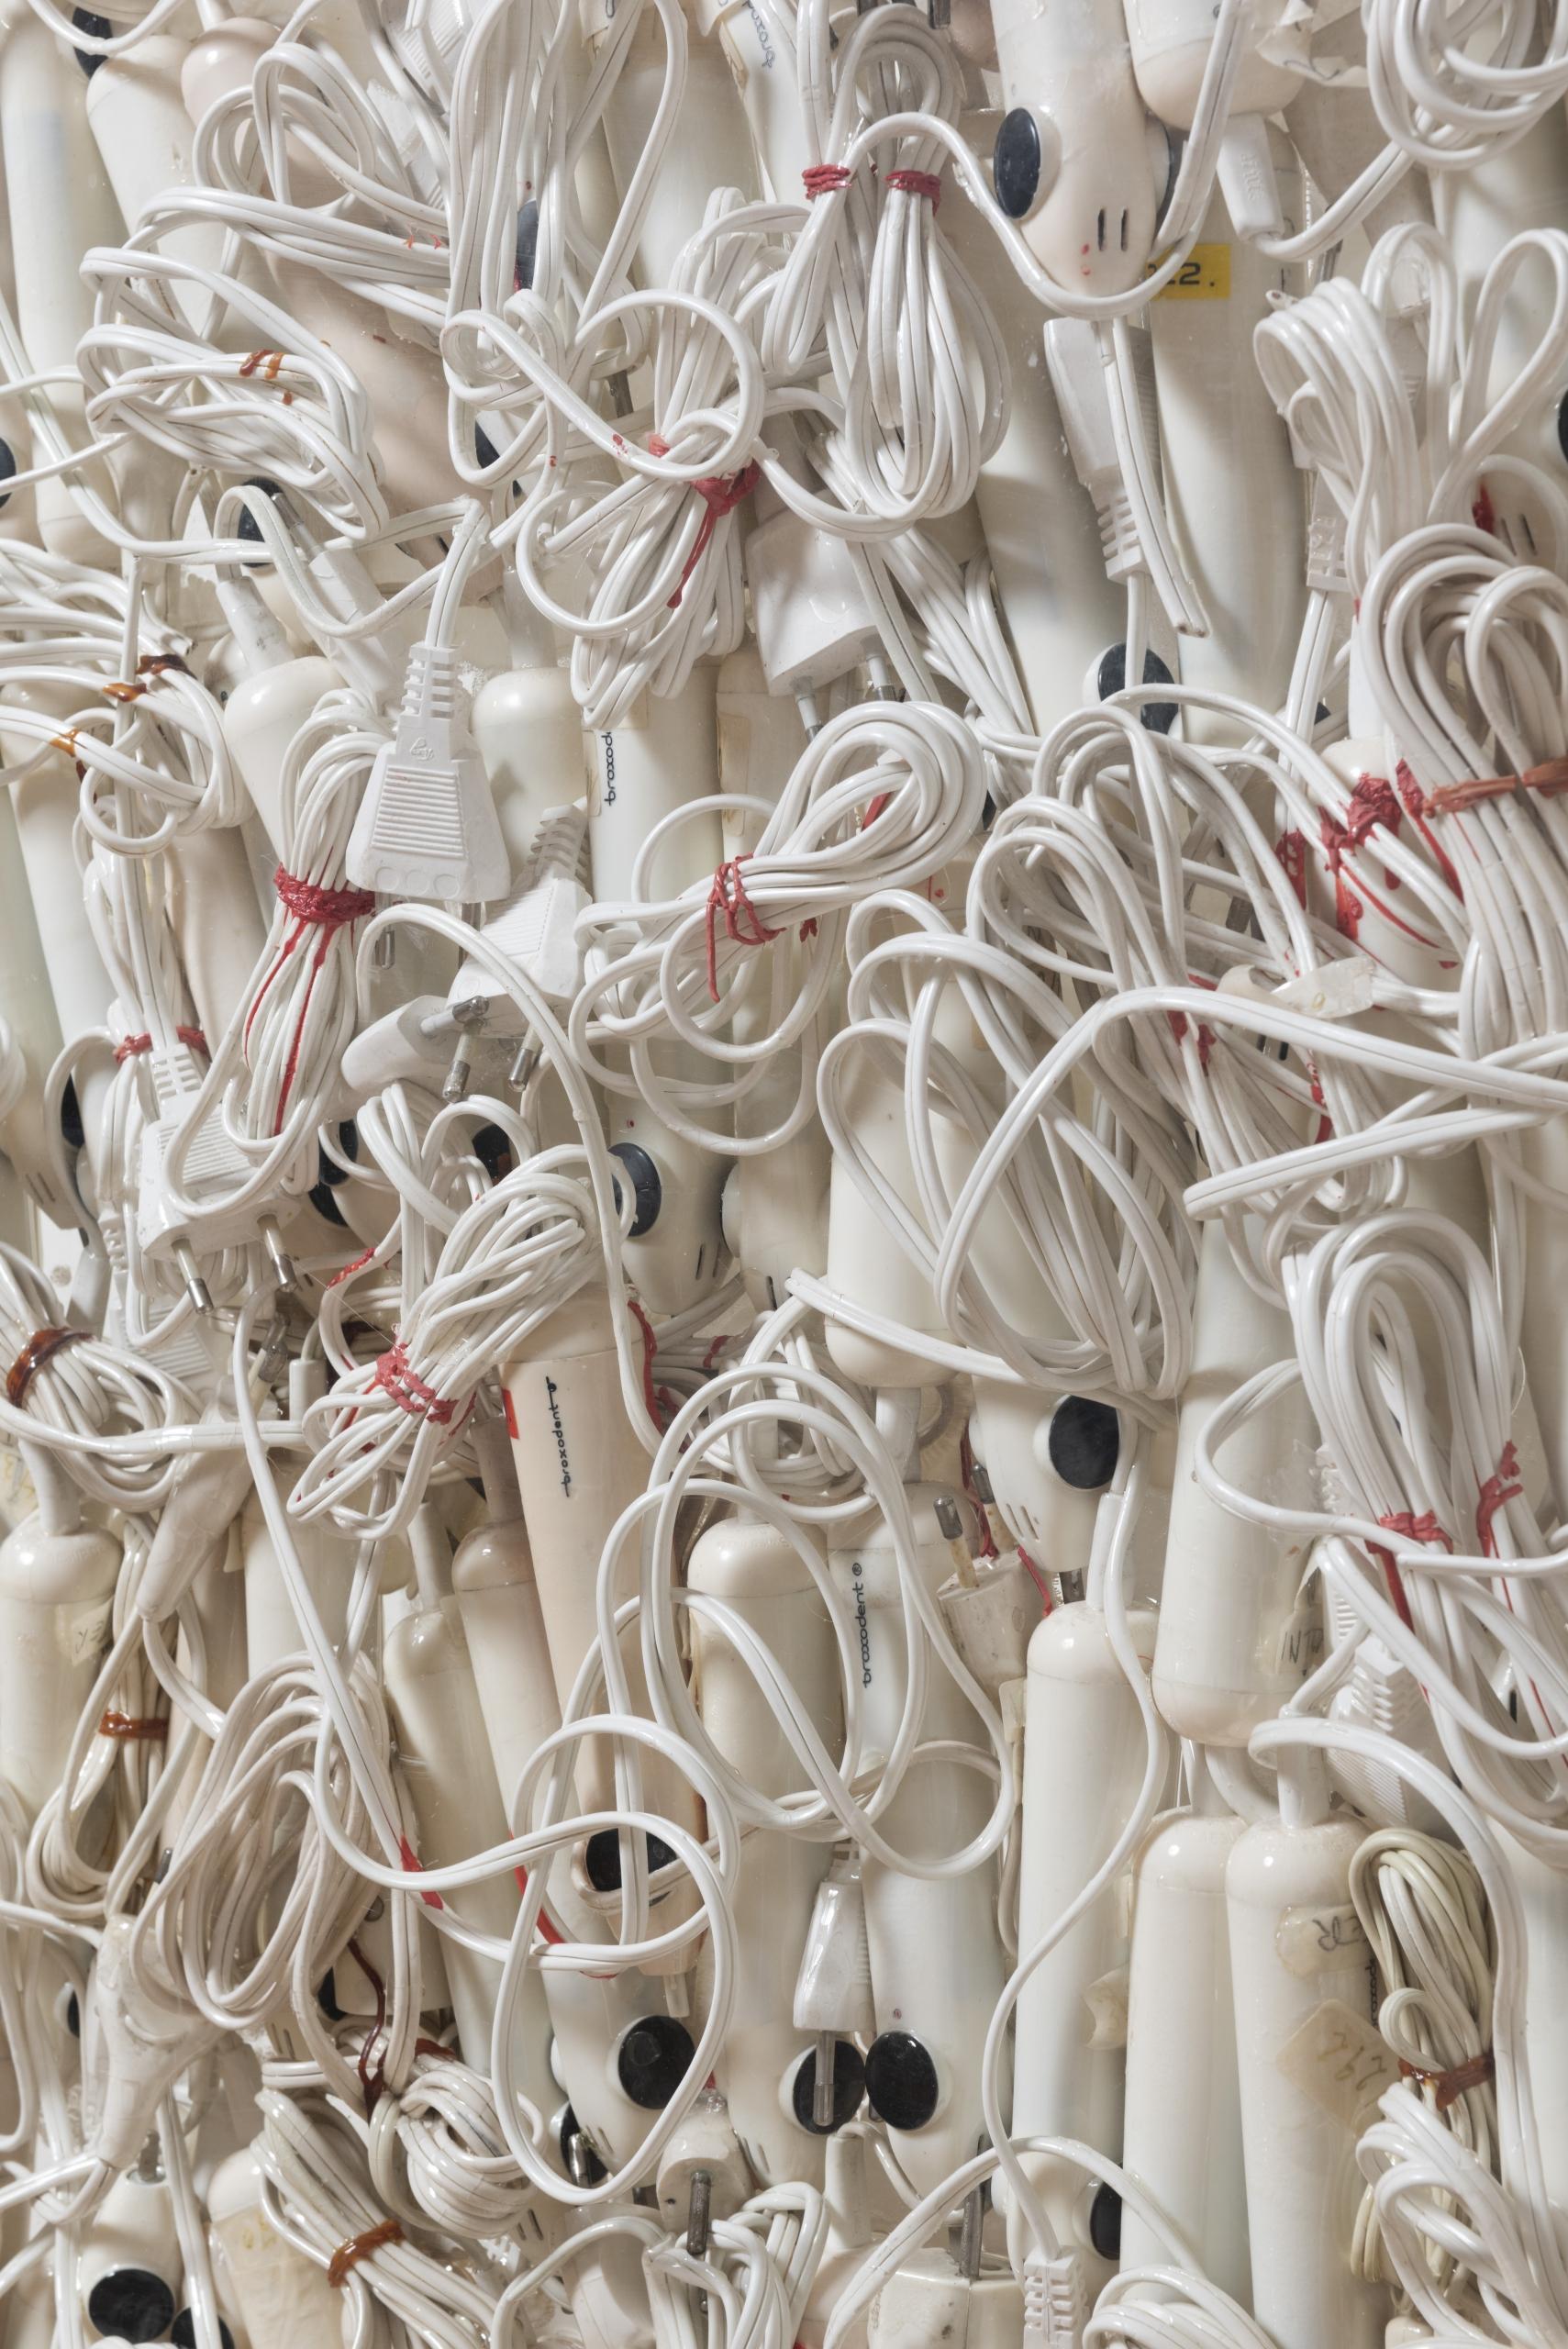 «Woogmania» est une oeuvre muséale de l’artiste français Arman, 1972.
Accumulation de brosses à dents électriques sous plexiglas.

Cette sculpture a été présentée au sein de l’exposition «Gigantisme-Art et industrie»
de la FRAC Grand Large en